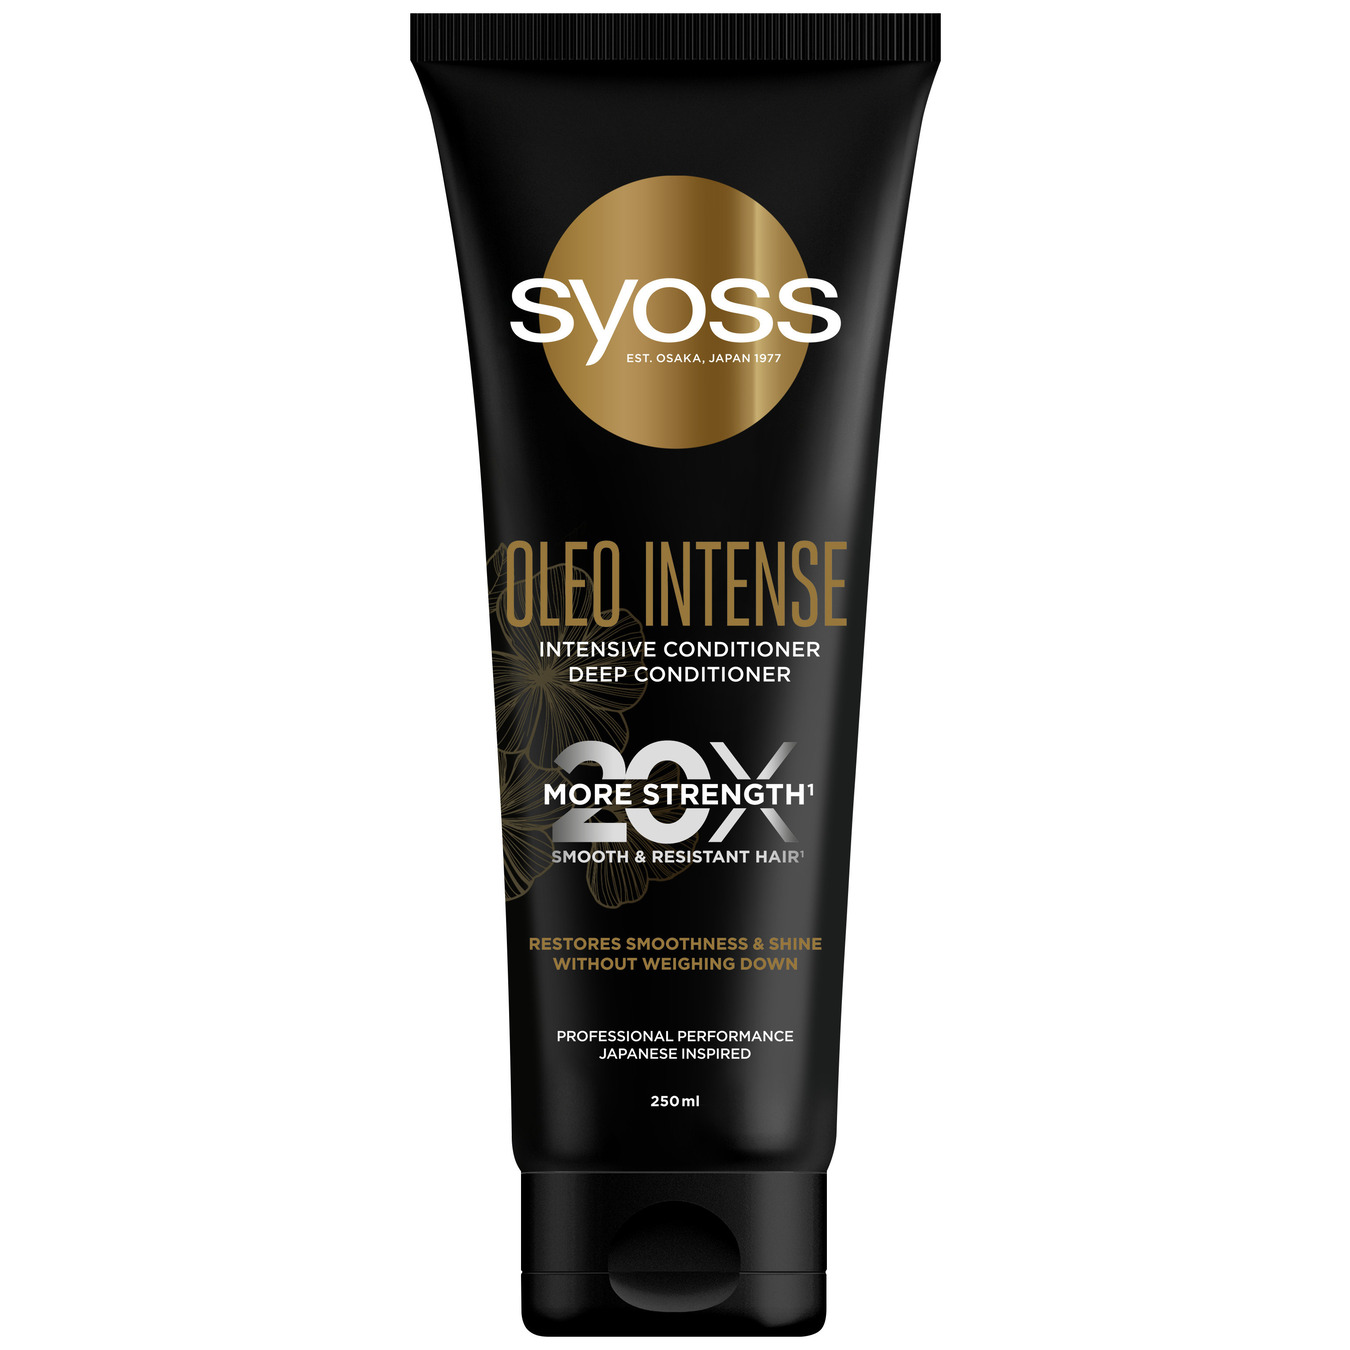 Интенсивный кондиционер Syoss Oleo Intense для сухих и тусклых волос 250мл